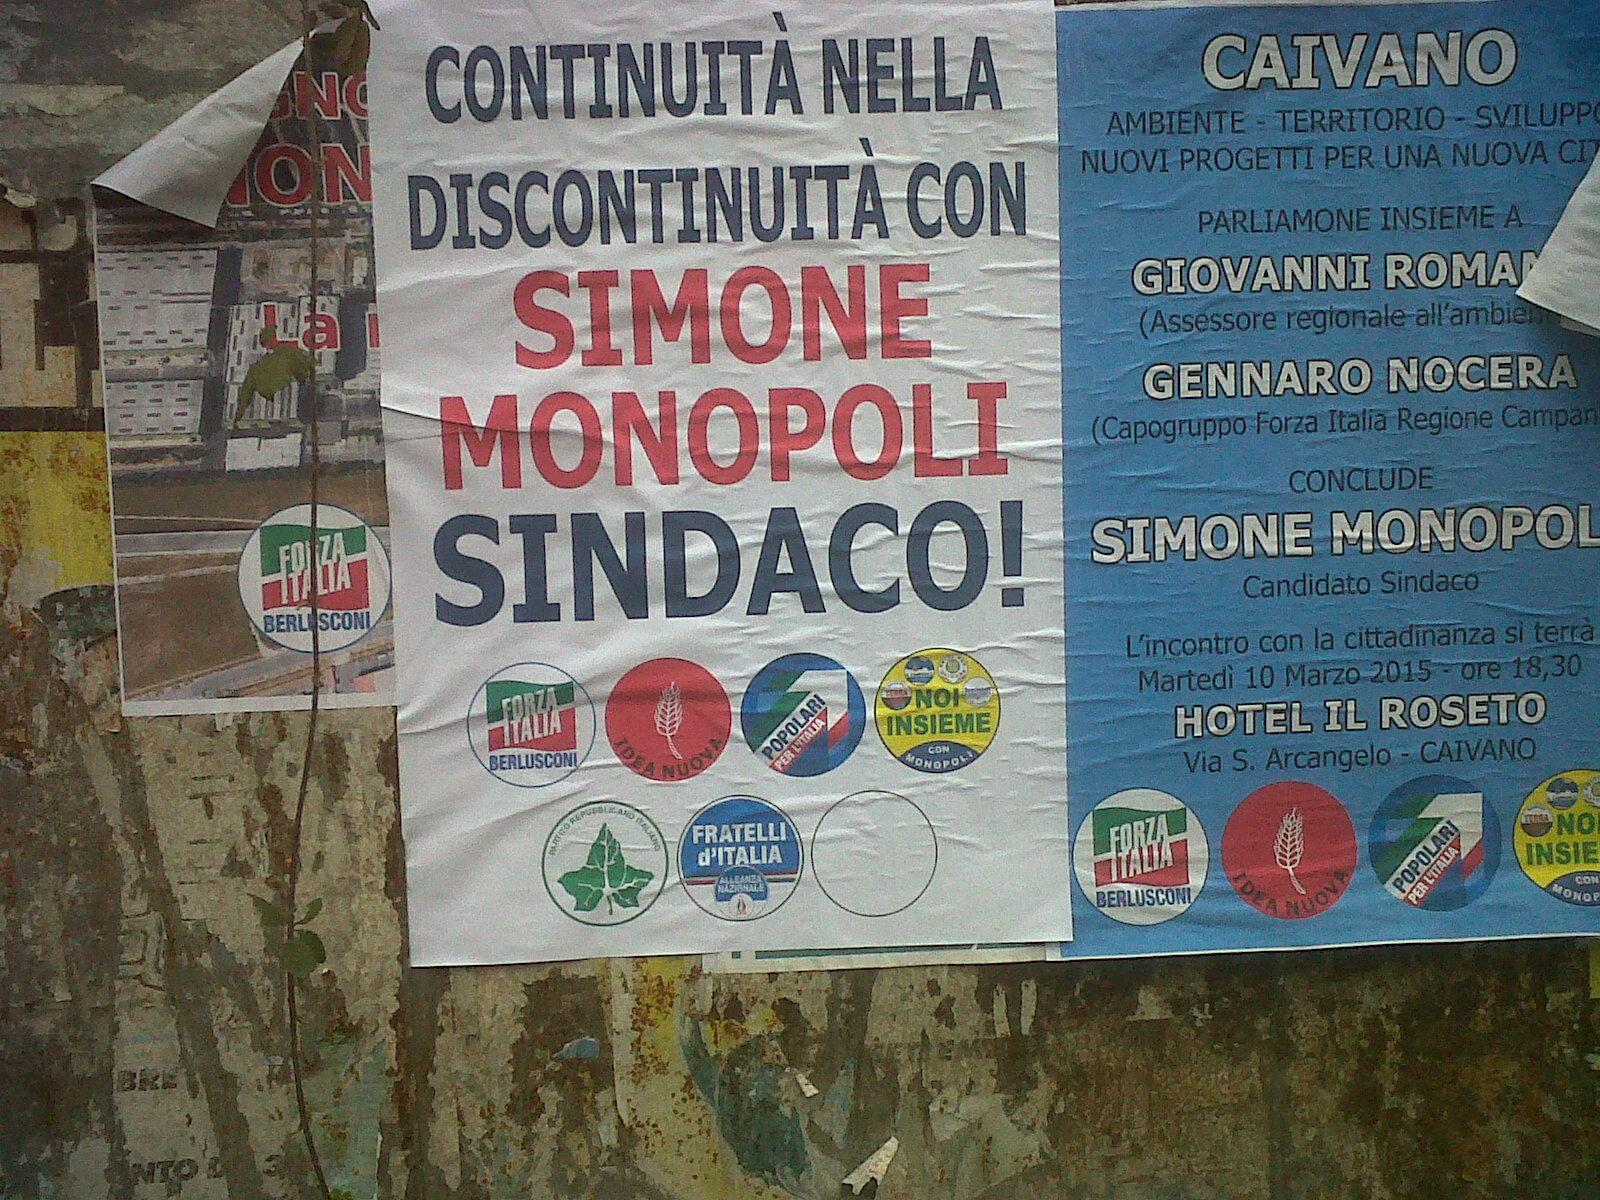 ANTEPRIMA/Fratelli d’Italia e Partito Repubblicano si schierano con Monopoli